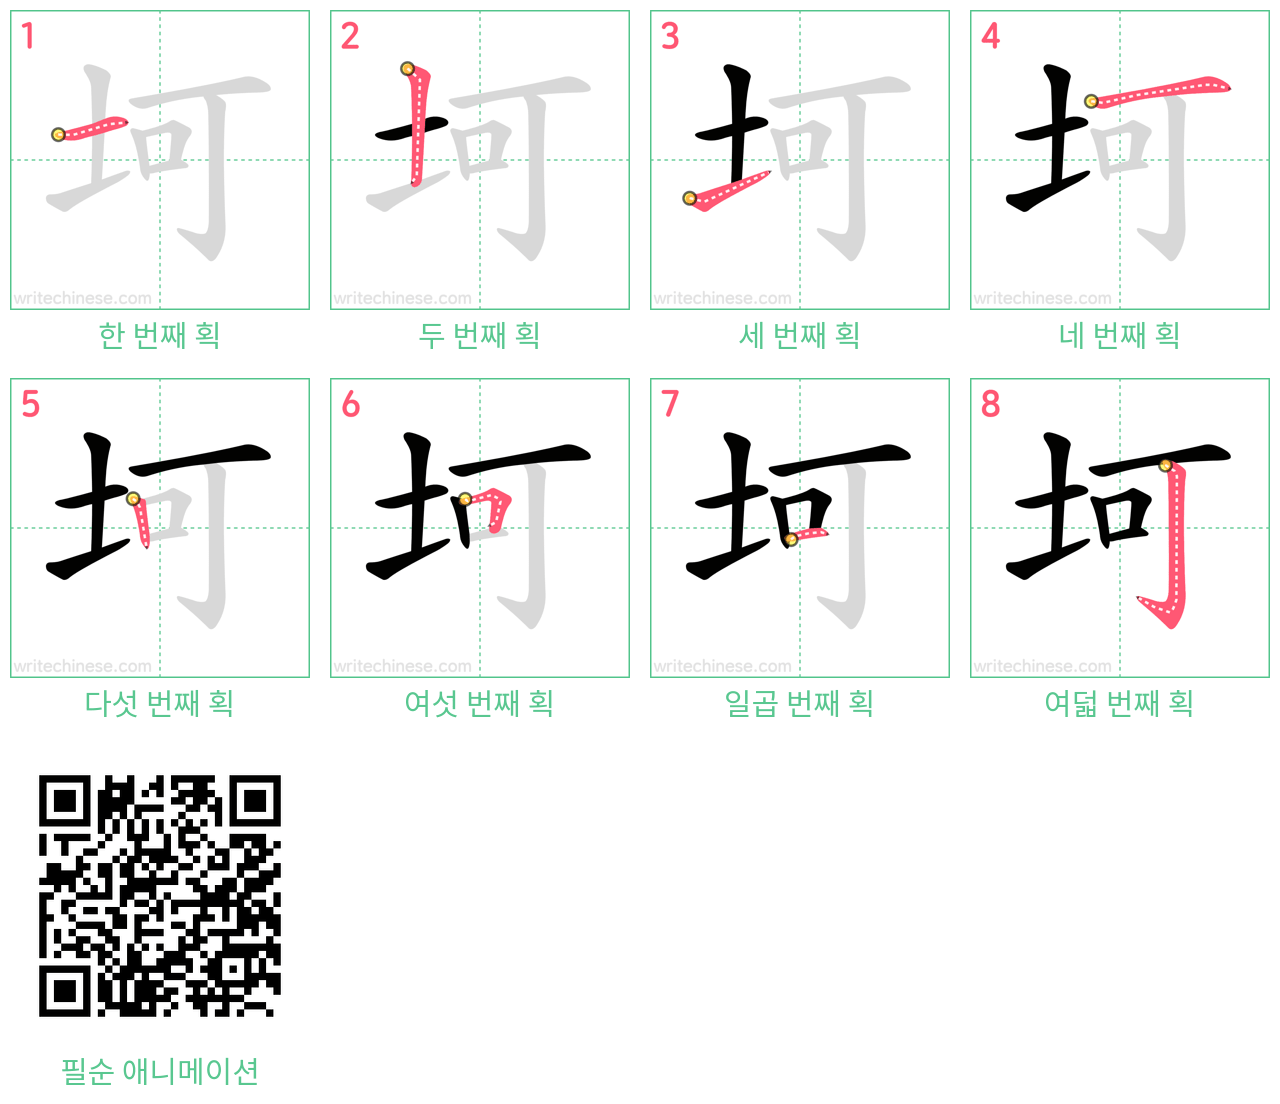 坷 step-by-step stroke order diagrams